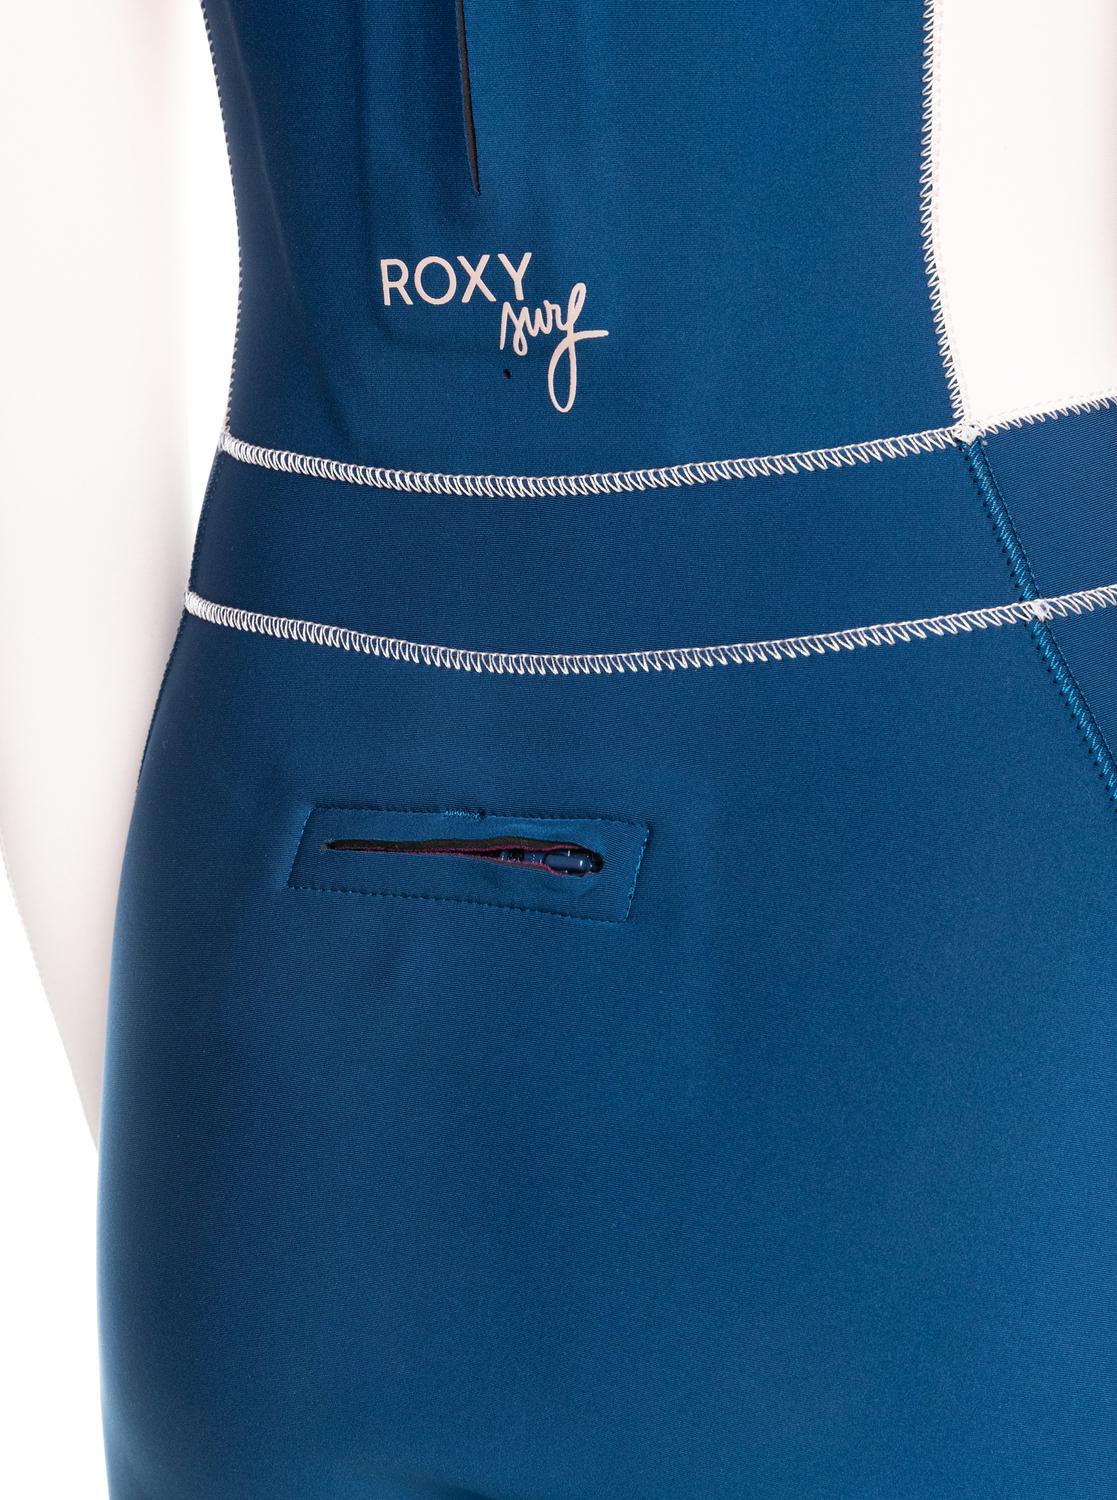 Roxy 3/2 ROXY RISE BZ GBS (Farbe: blue - iodine blue / Größe: 6)